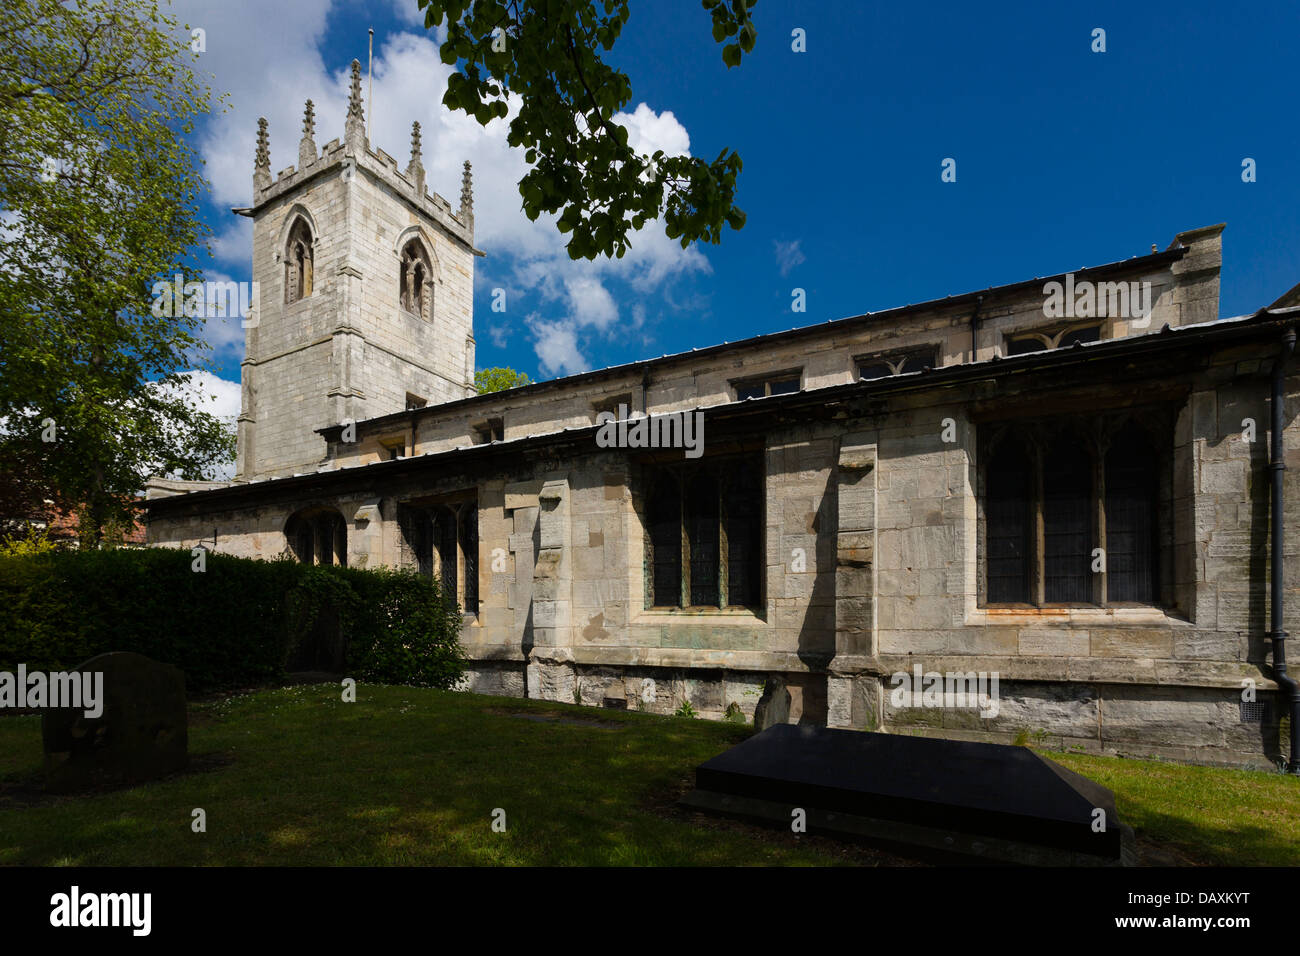 La Chiesa Parrocchiale di San Nicola in Bawtry, South Yorkshire. La chiesa è stata fondata nel 1190. Foto Stock